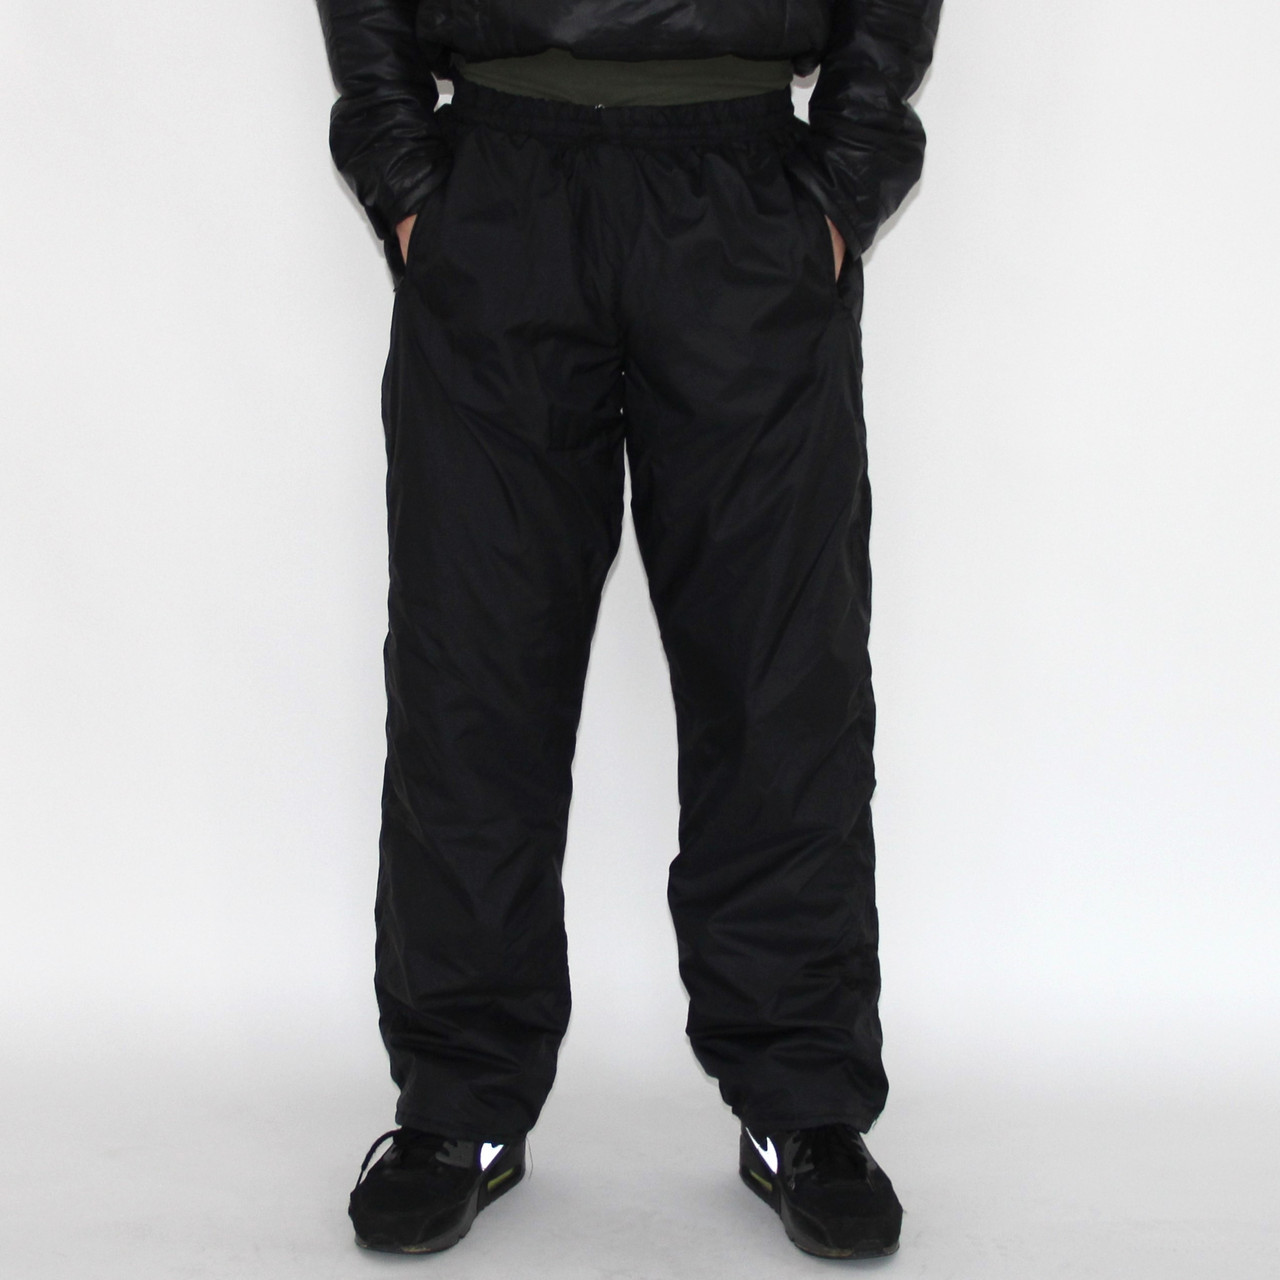 Мужские теплые спортивные штаны из плащевки на синтепоне размеры с 46 по 54 размер